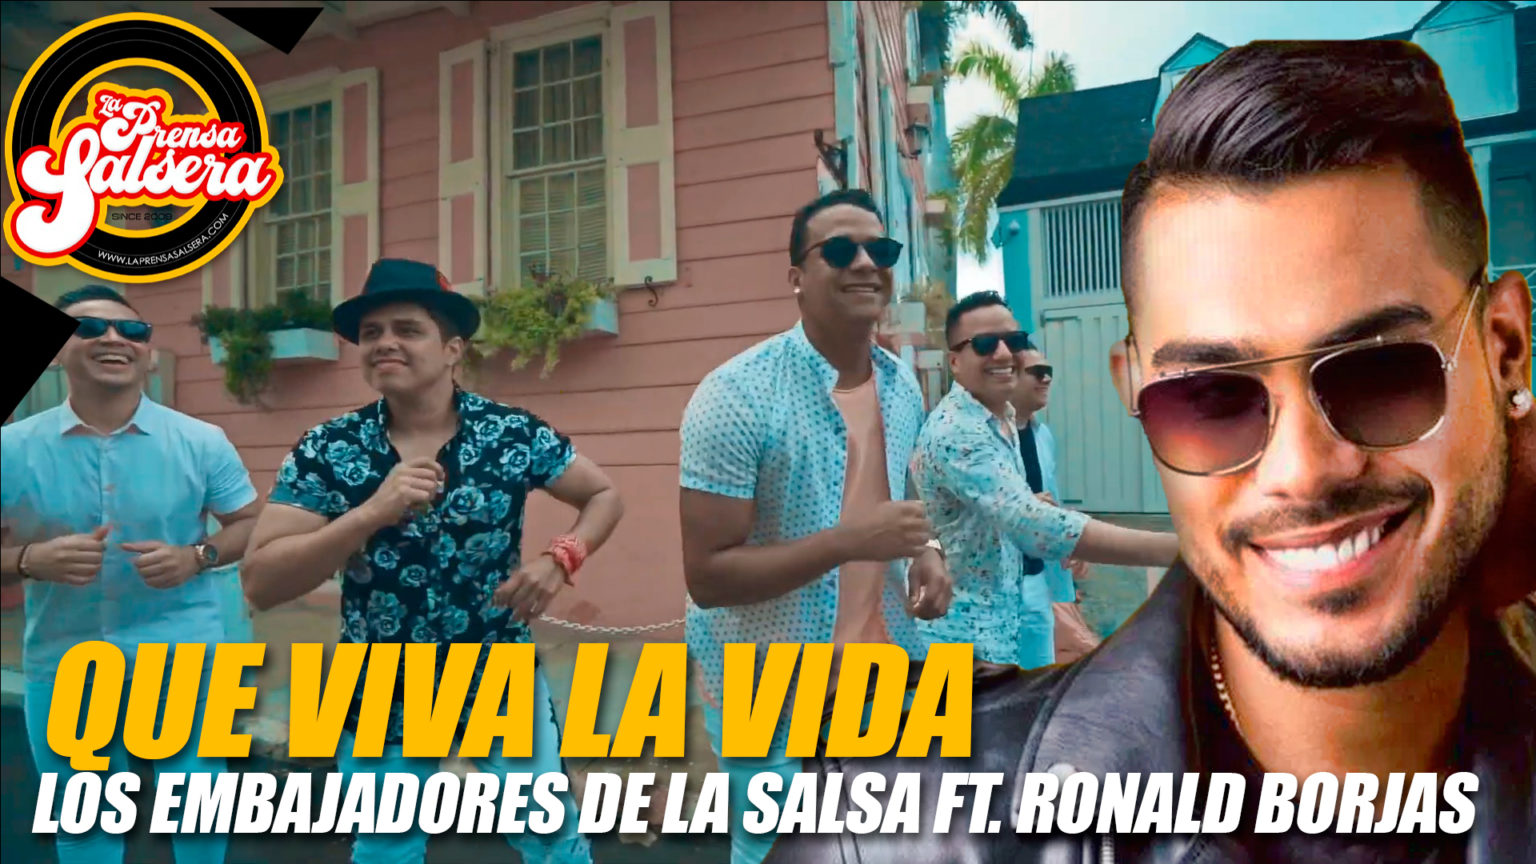 Imagen de la noticia: “QUE VIVA LA VIDA” es el primer sencillo de Los Embajadores de la Salsa Ft Ronald Borjas (Video)